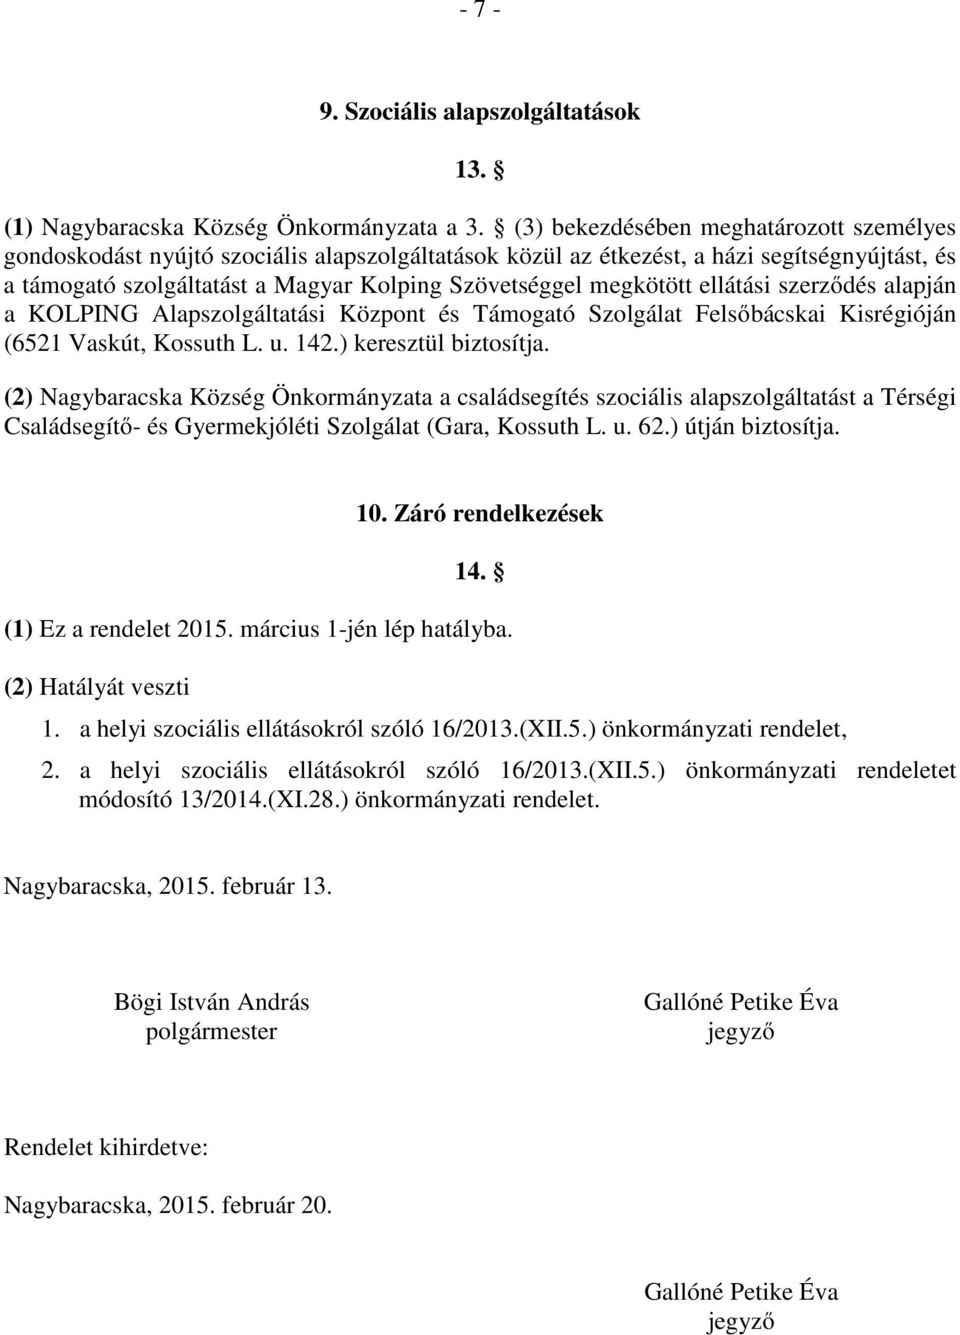 Nagybaracska Község Önkormányzata Képviselő-testületének 2/2015. (II.20.)  önkormányzati rendelete. a helyi szociális ellátásokról - PDF Free Download